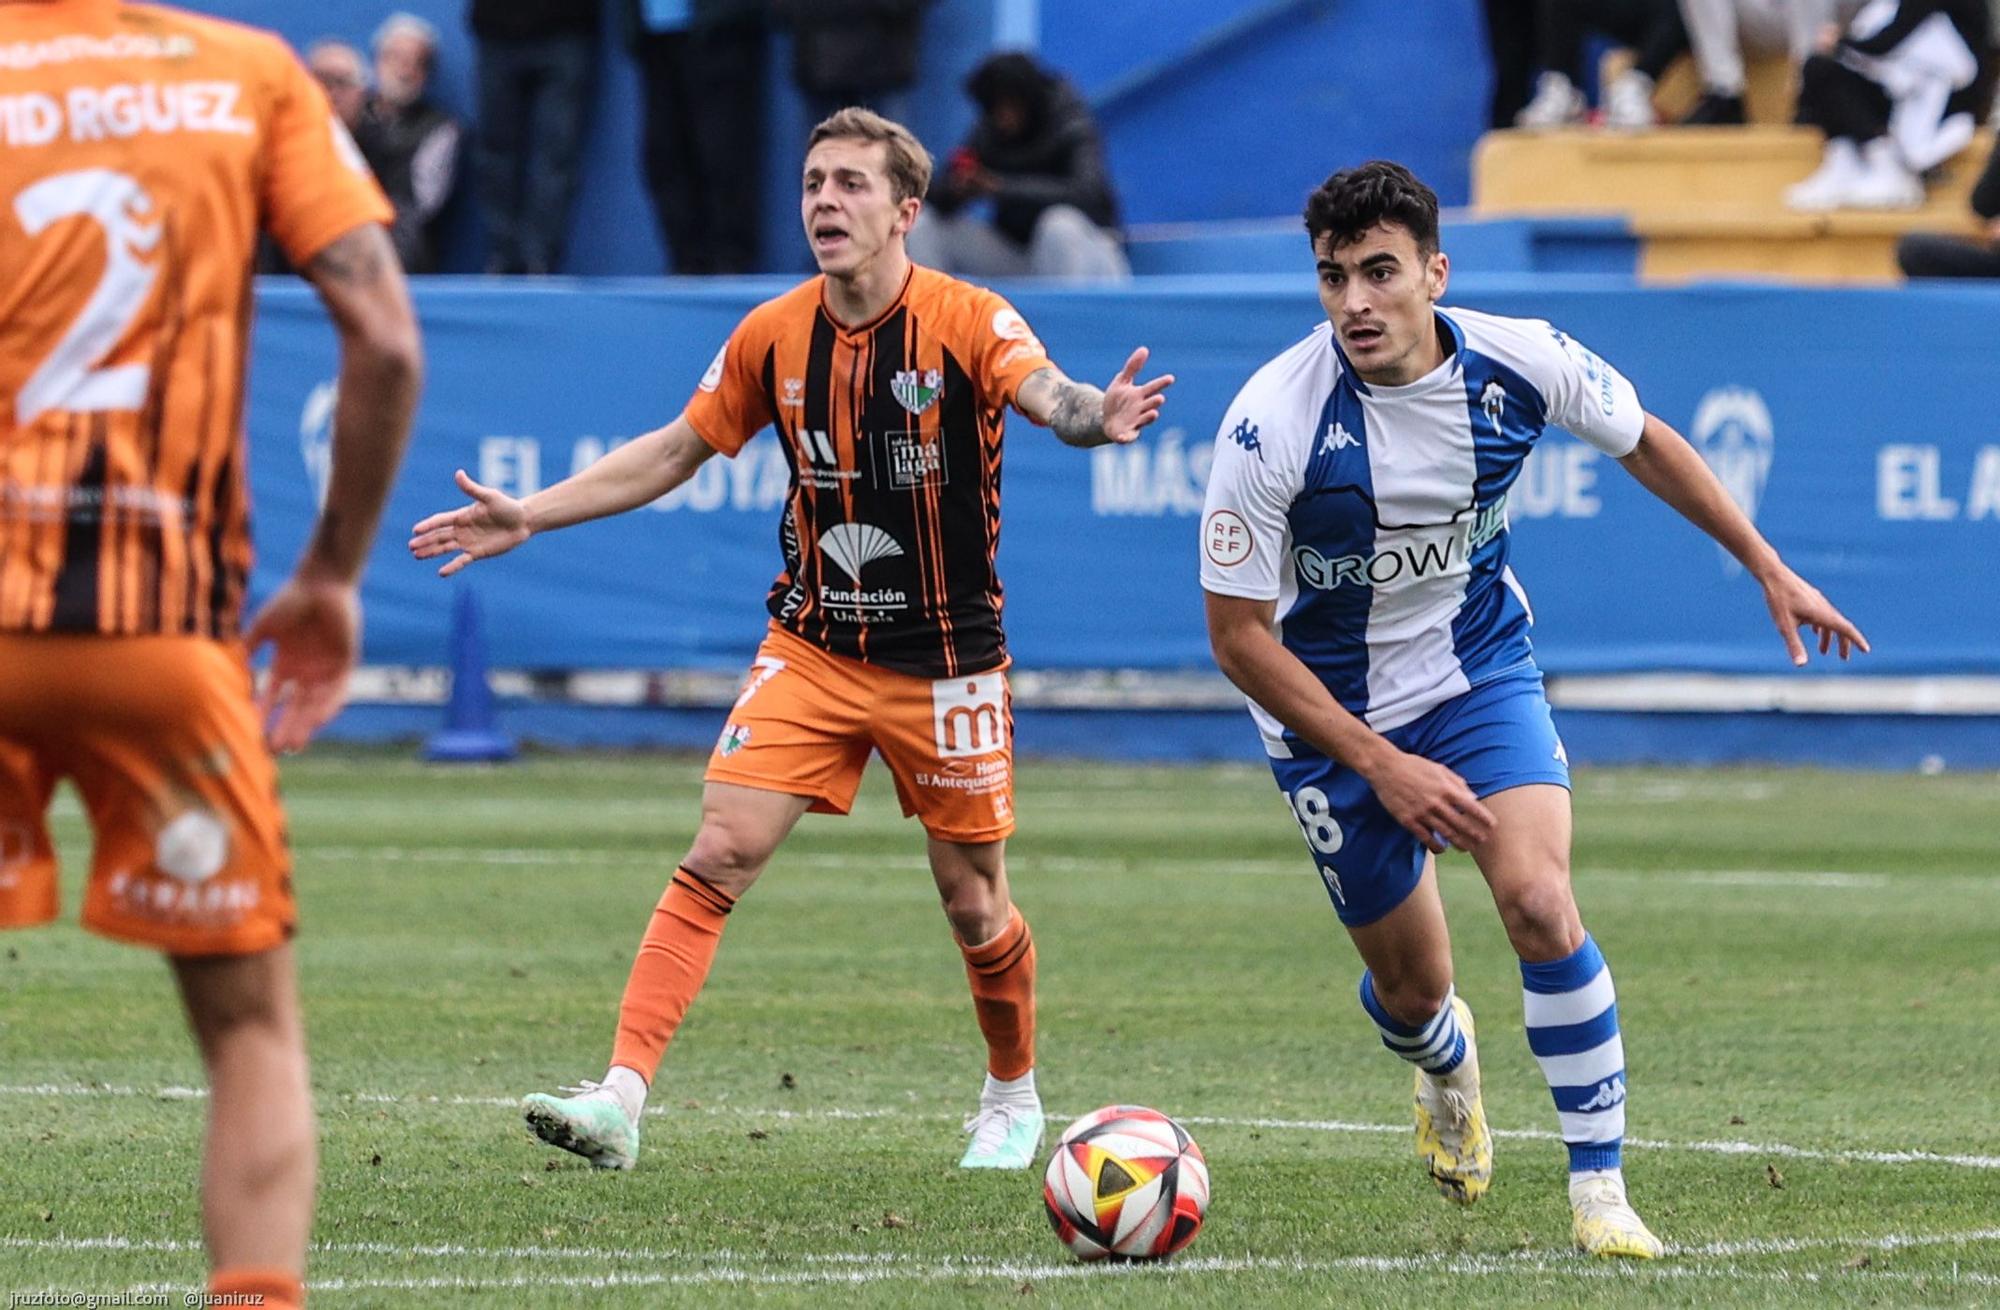 Alcaina da la victoria al Deportivo Alcoyano con un gol de penalti